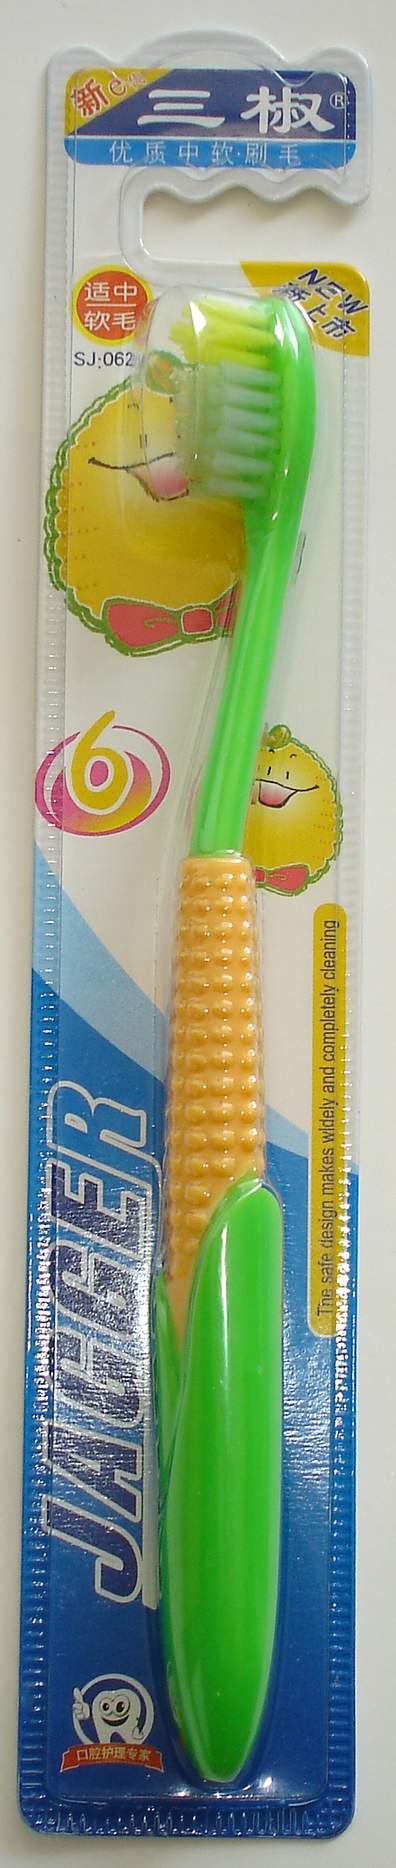 kid toothbrush